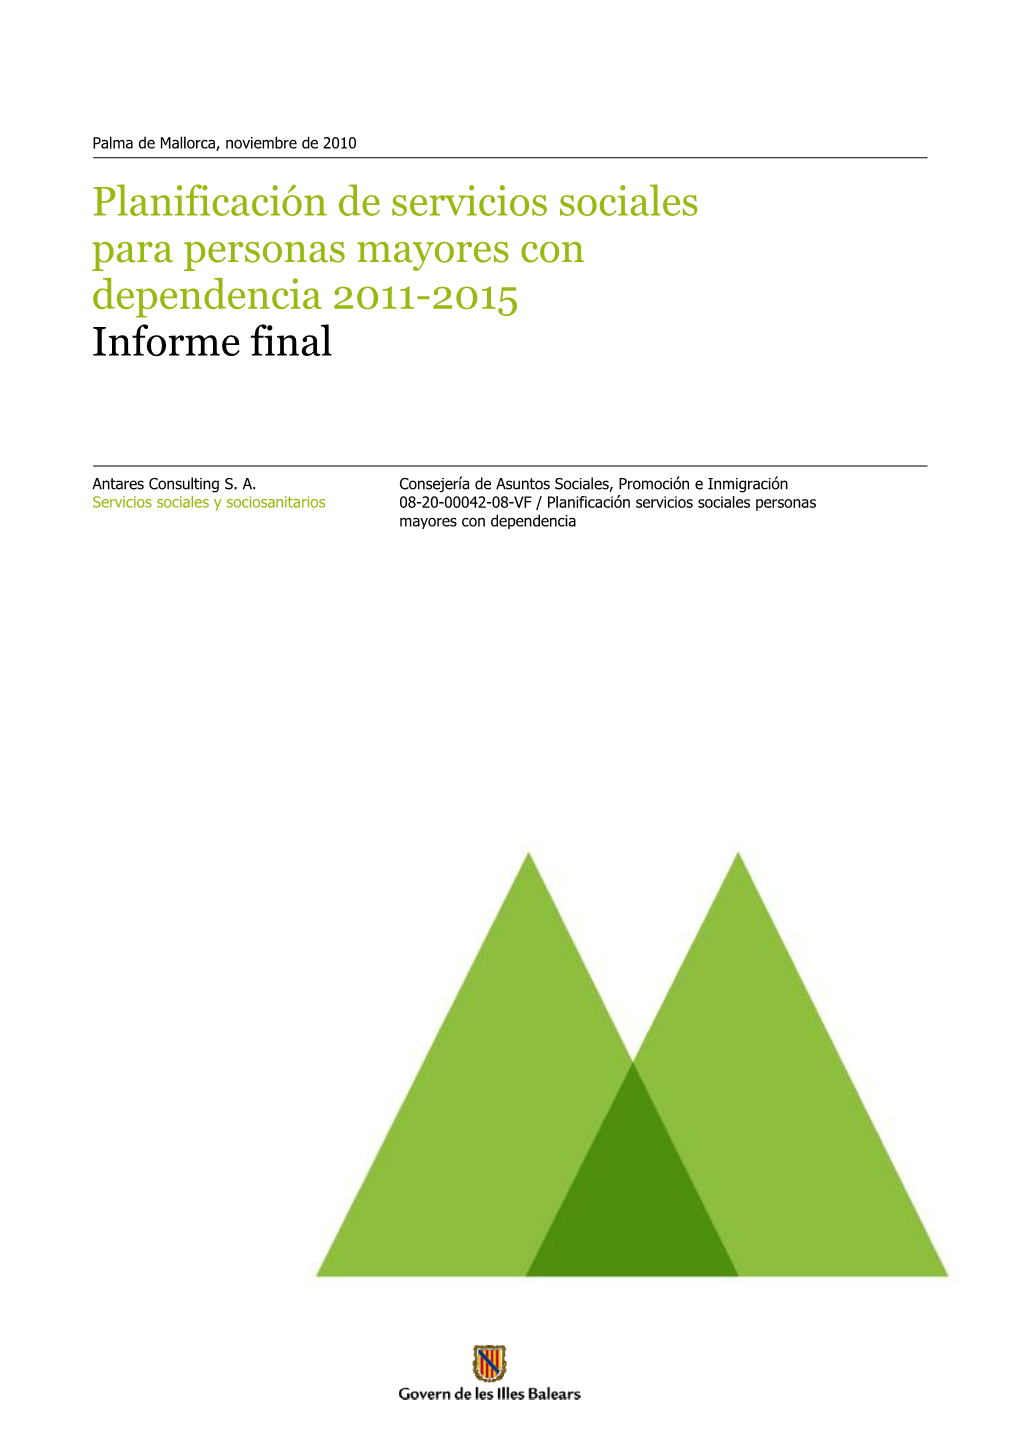 Planificación De Servicios Sociales Para Personas Mayores Con Dependencia 2011-2015 Informe Final